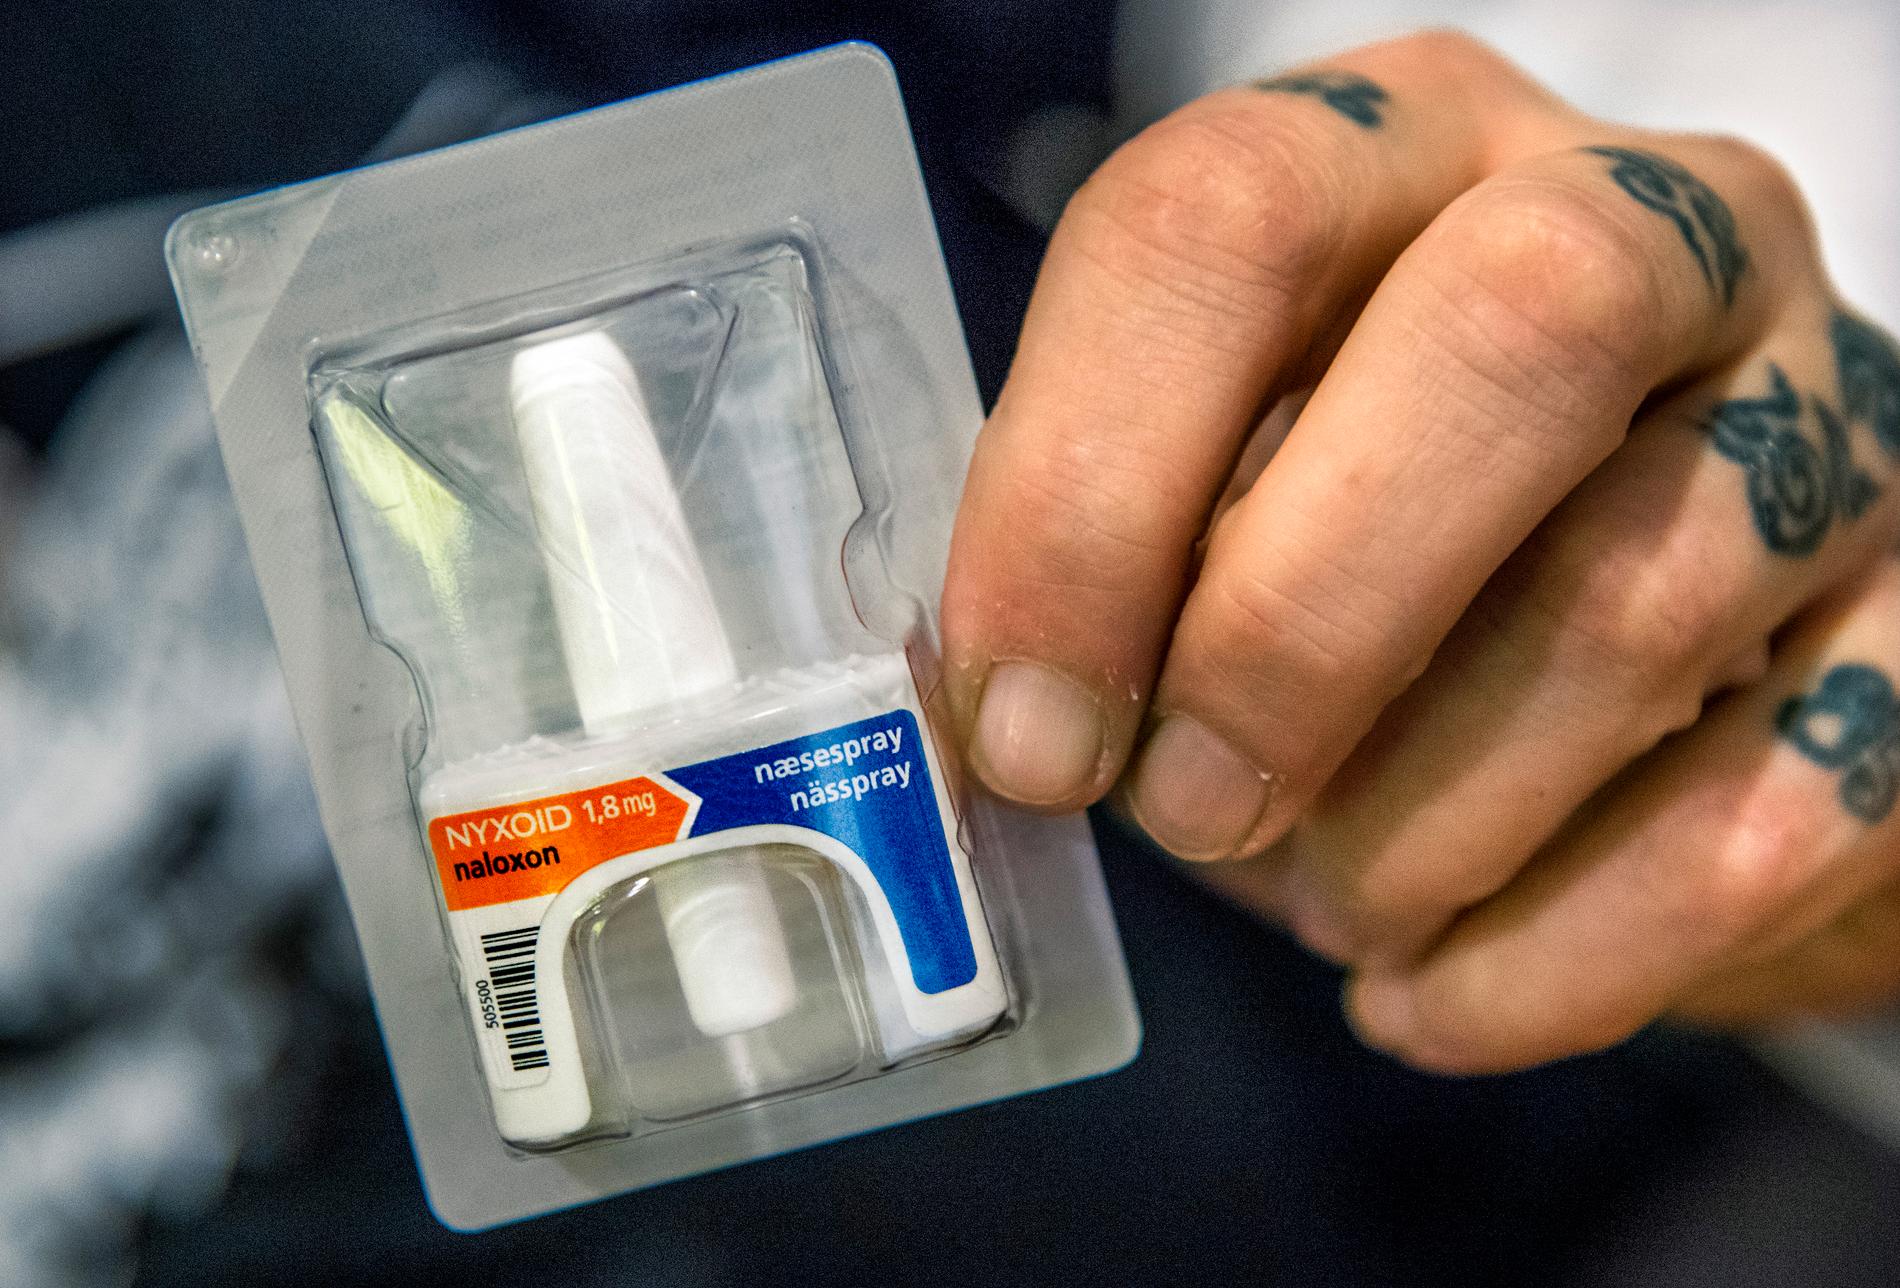 Motgiftet Naloxon som kan häva dödliga överdoser av opiater